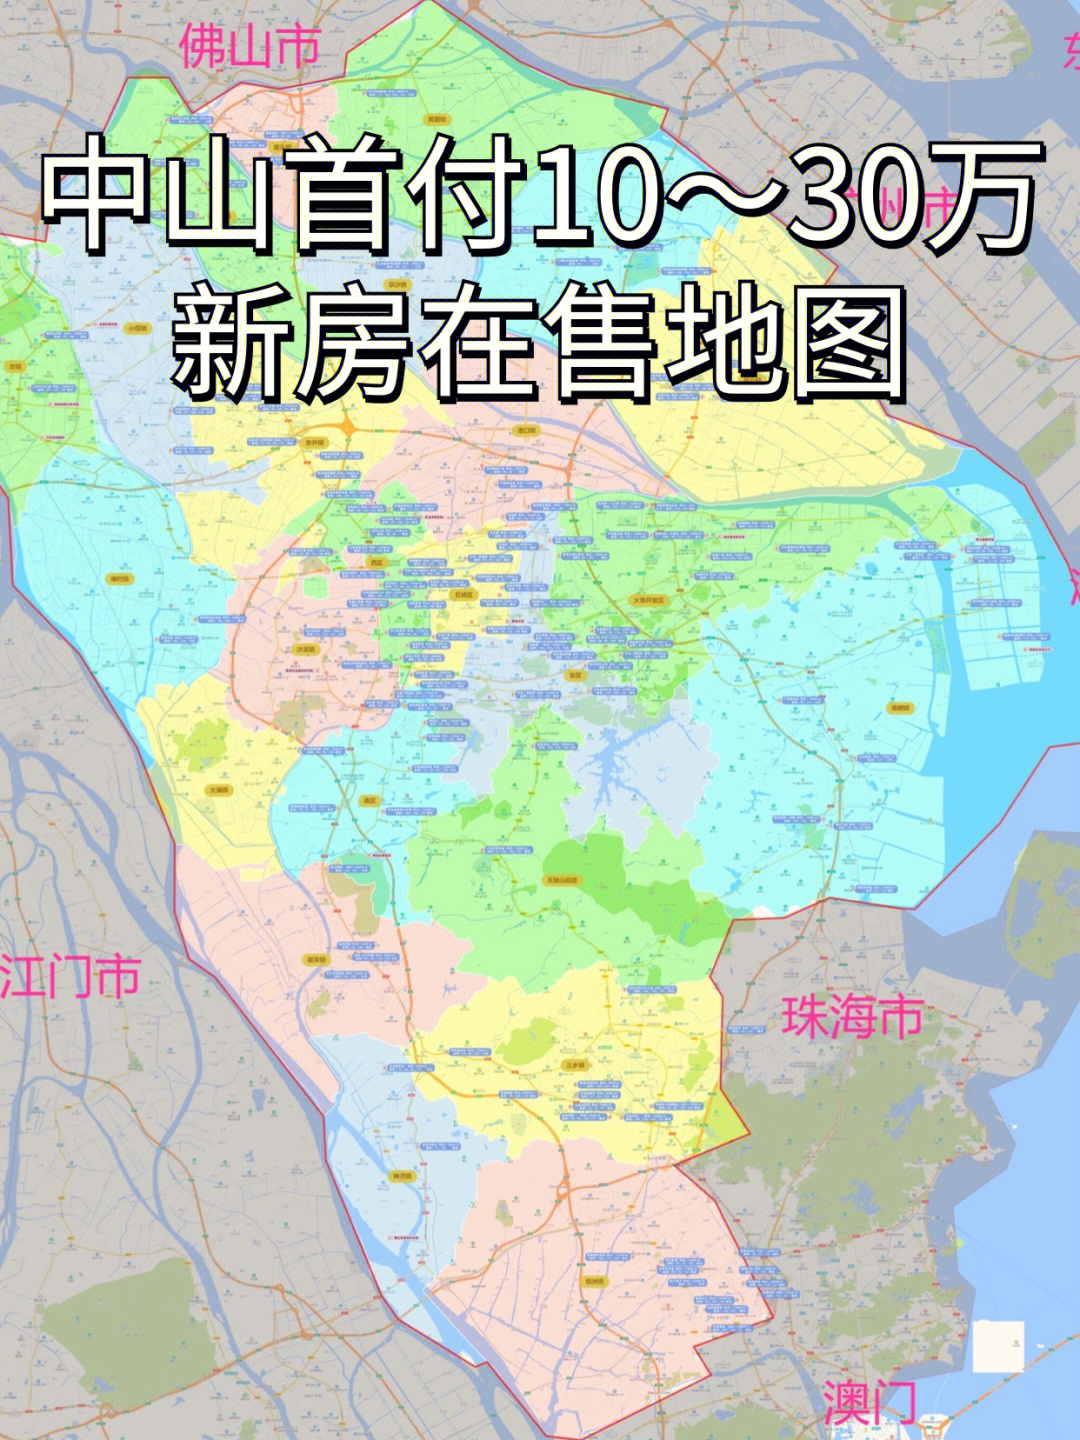 中山地图镇区划分高清图片